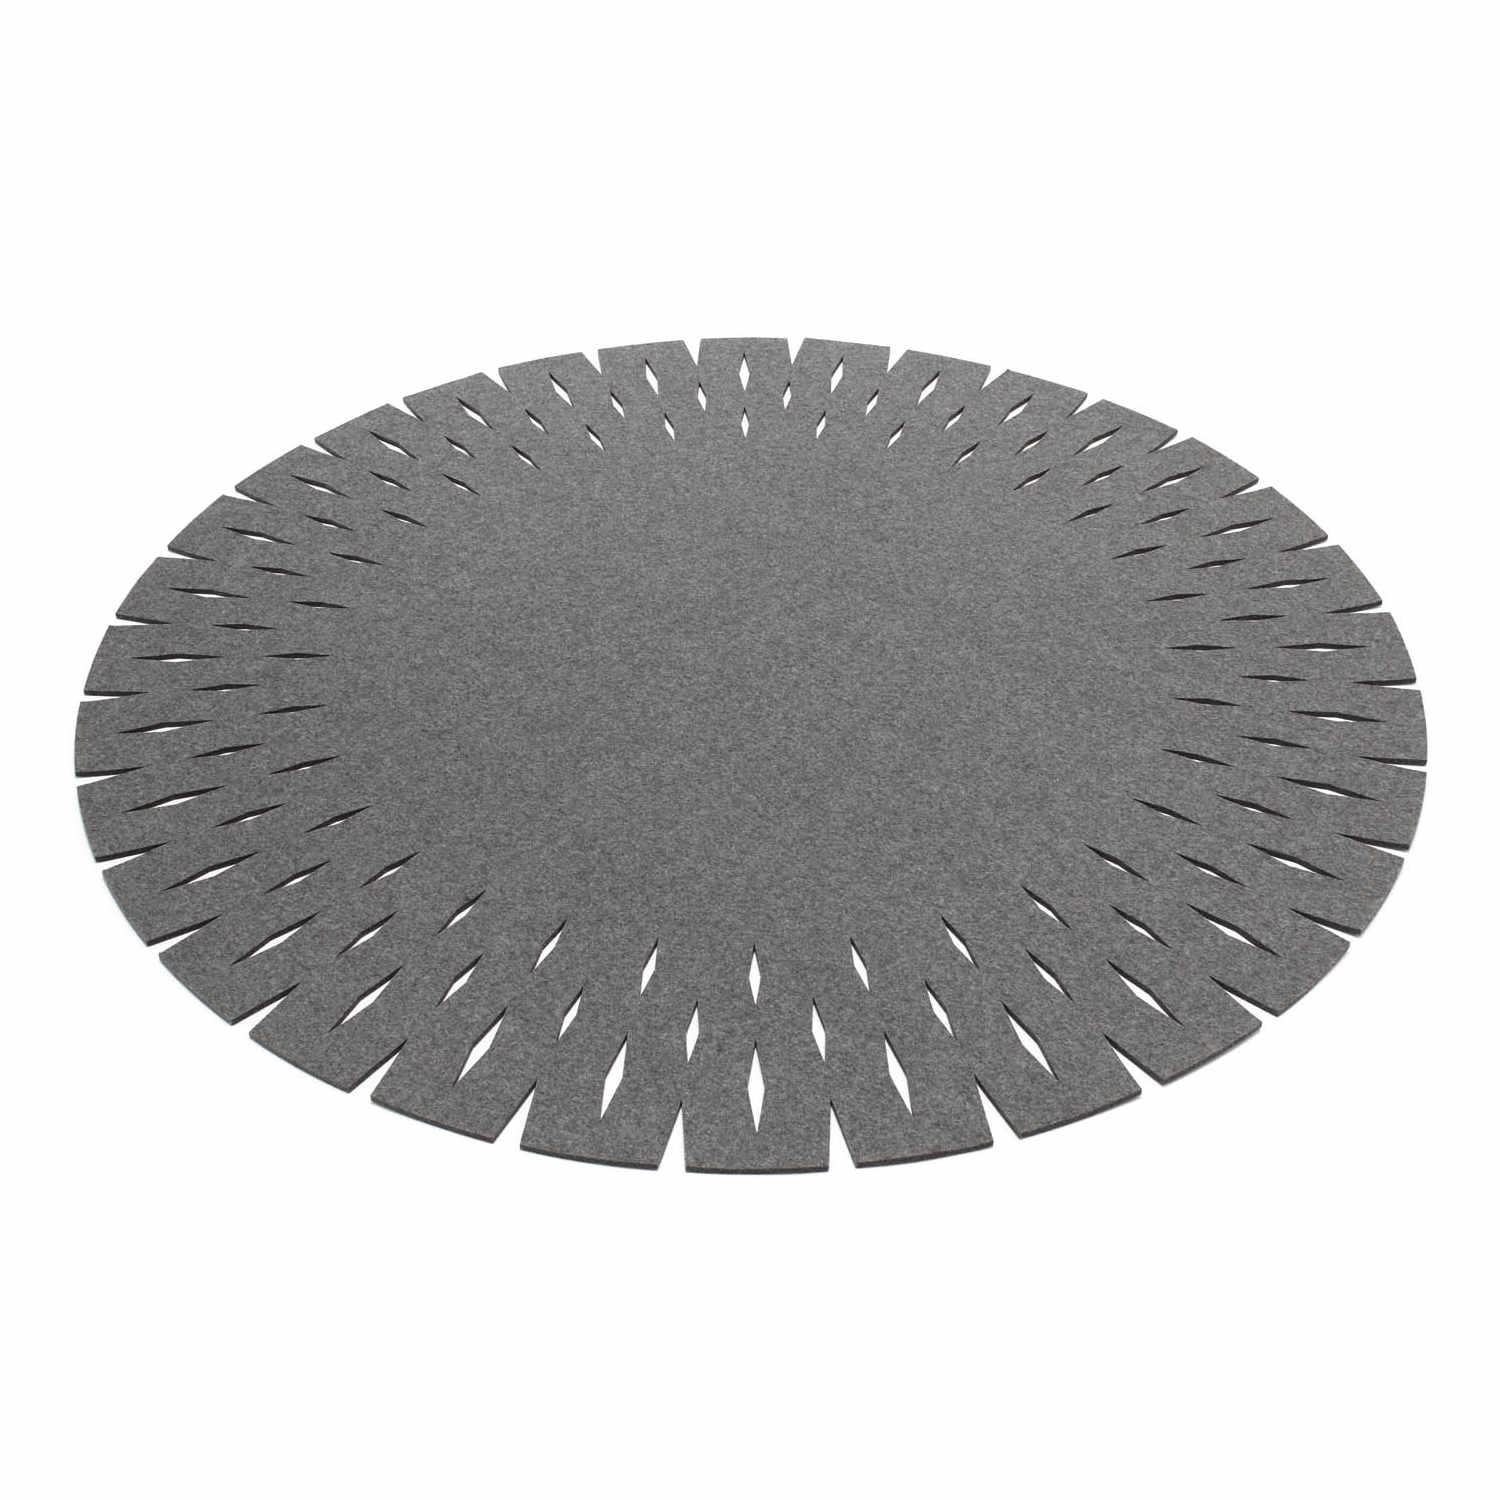 Grate Teppich, Farbe graphit, Durchmesser 180 cm von HEY-SIGN